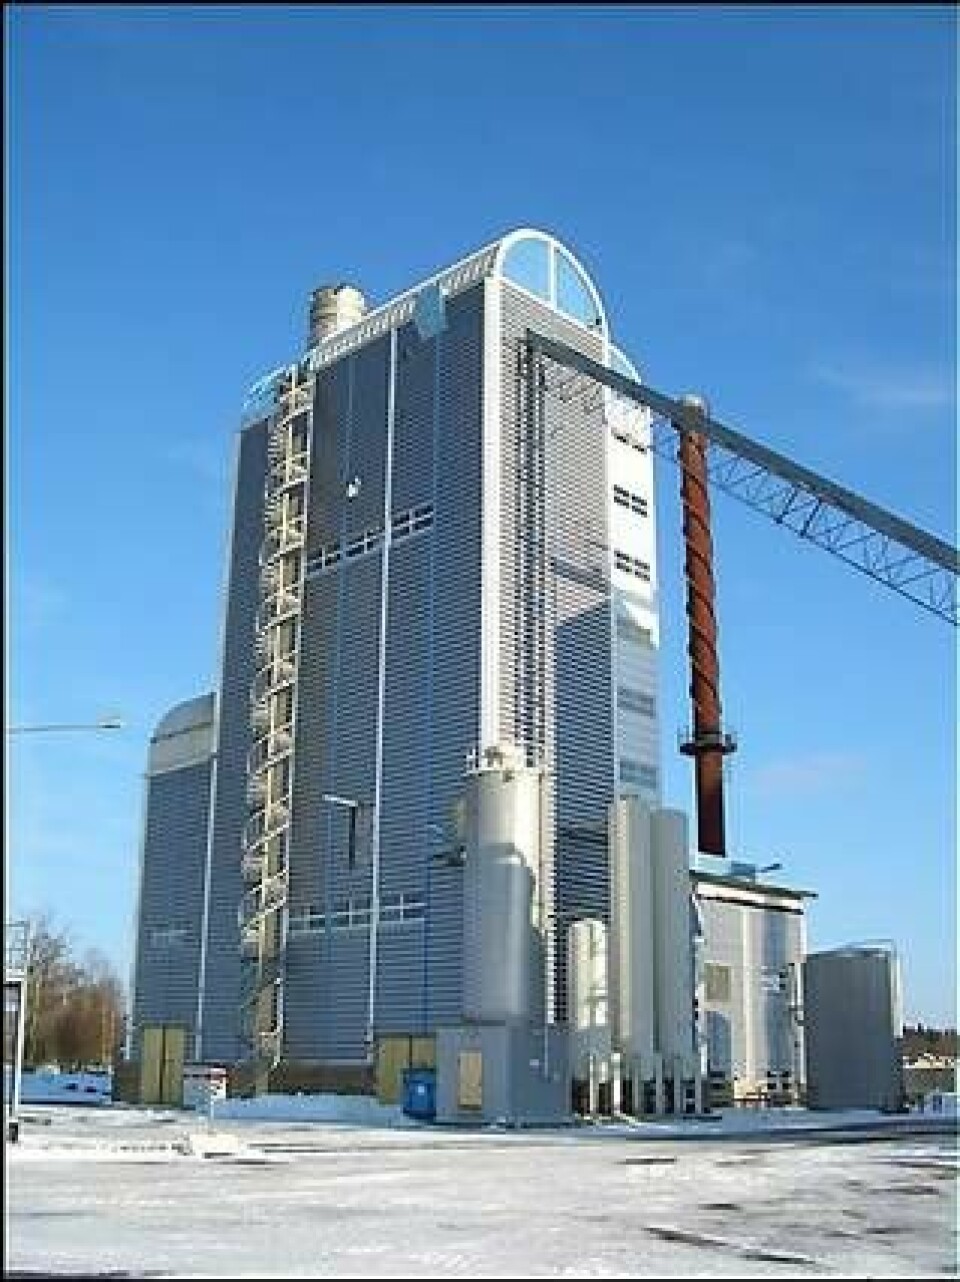 Förgasningsanläggningen i Värnamo byggdes av Sydkraft på 1990-talet. Den ska nu byggas ut med teknik för framställning av syntesgas. Klicka för större bild.